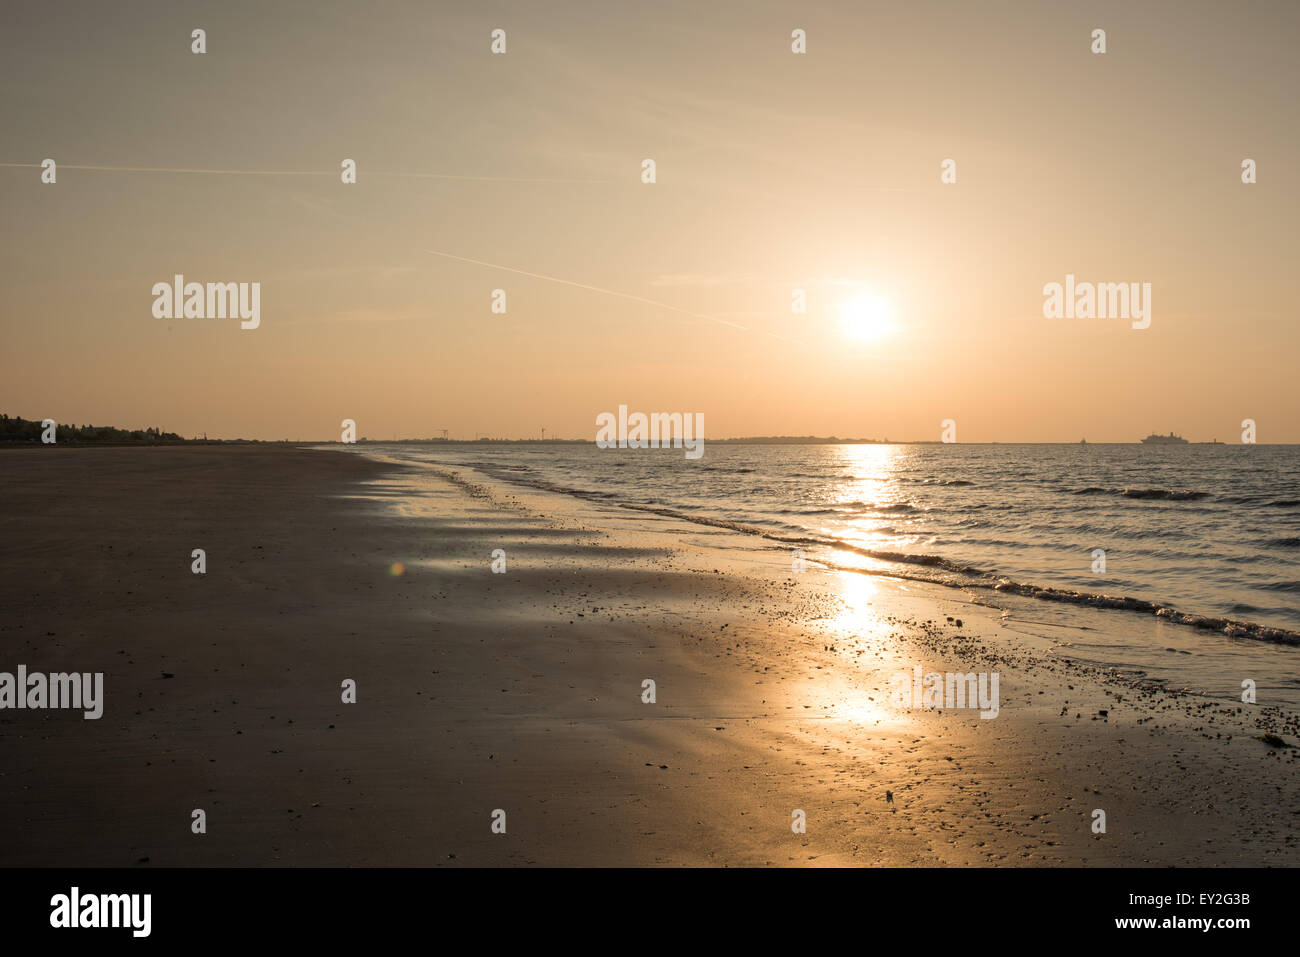 Spiaggia del Lido di Venezia Alba Italia 18 maggio 2015 Foto Stock